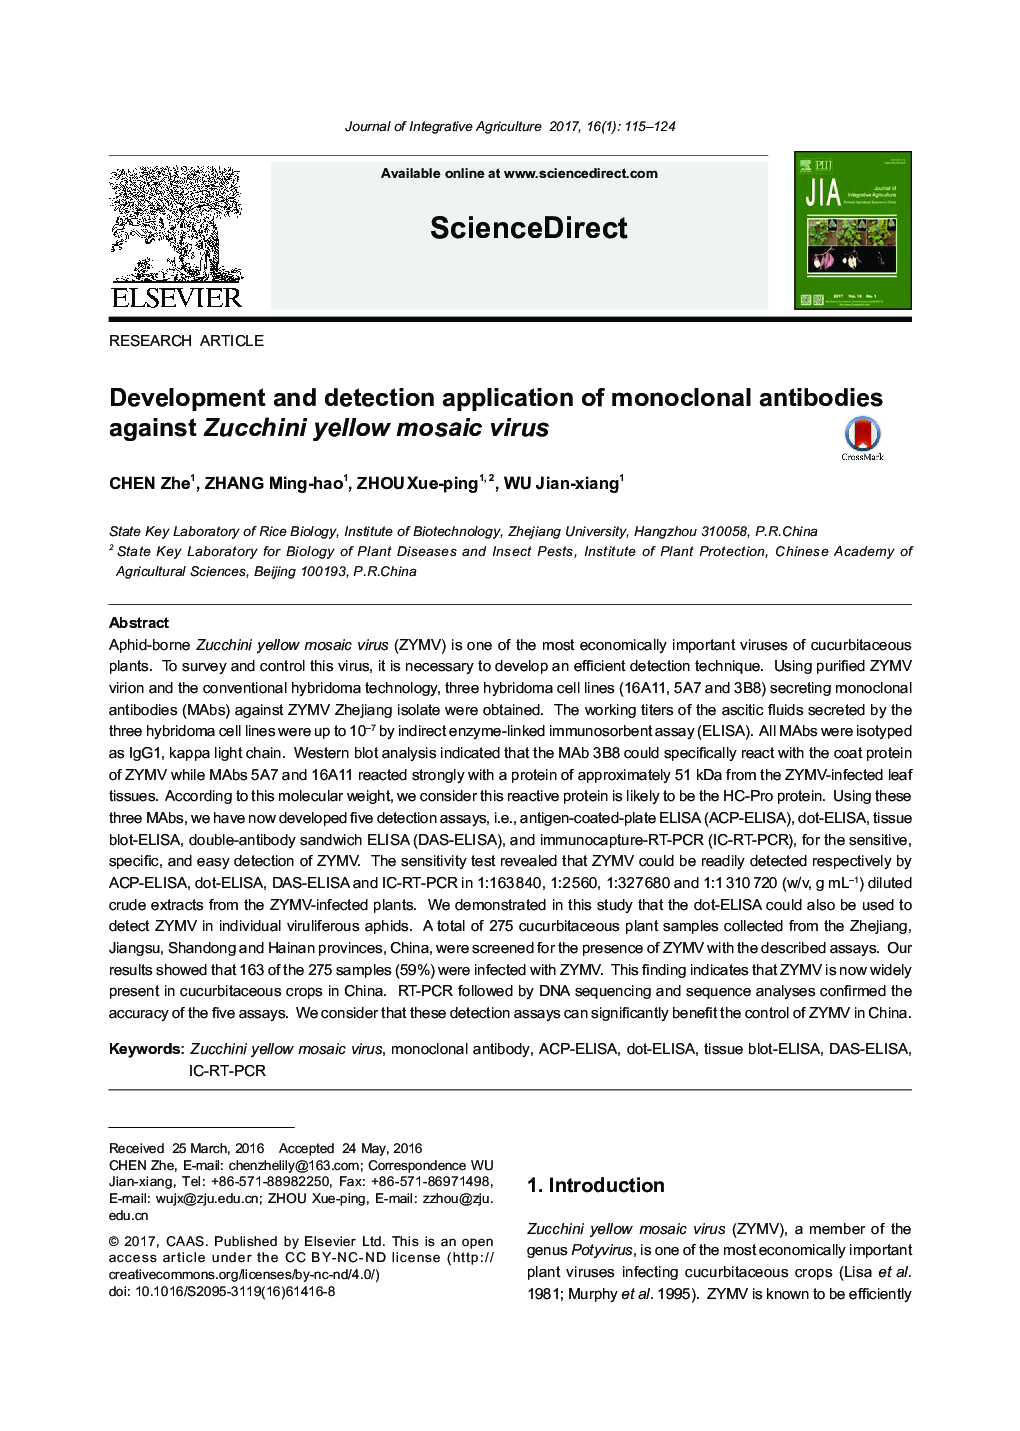 کاربرد و توسعه آنتی بادیهای مونوکلونال علیه ویروس موزائیک زرد سبز 